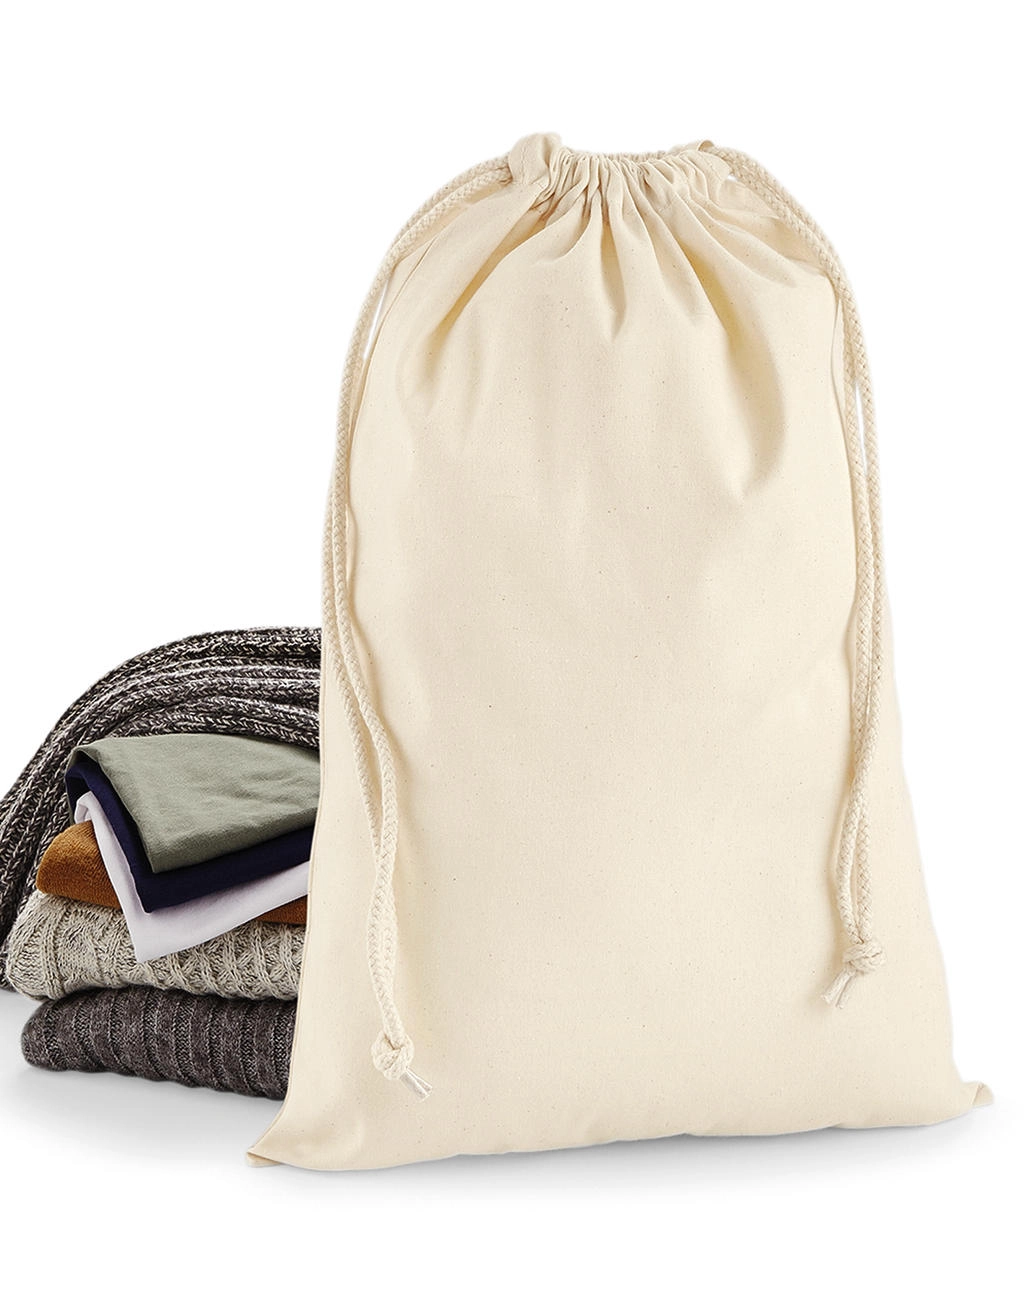 Premium Cotton Stuff Bag zum Besticken und Bedrucken mit Ihren Logo, Schriftzug oder Motiv.